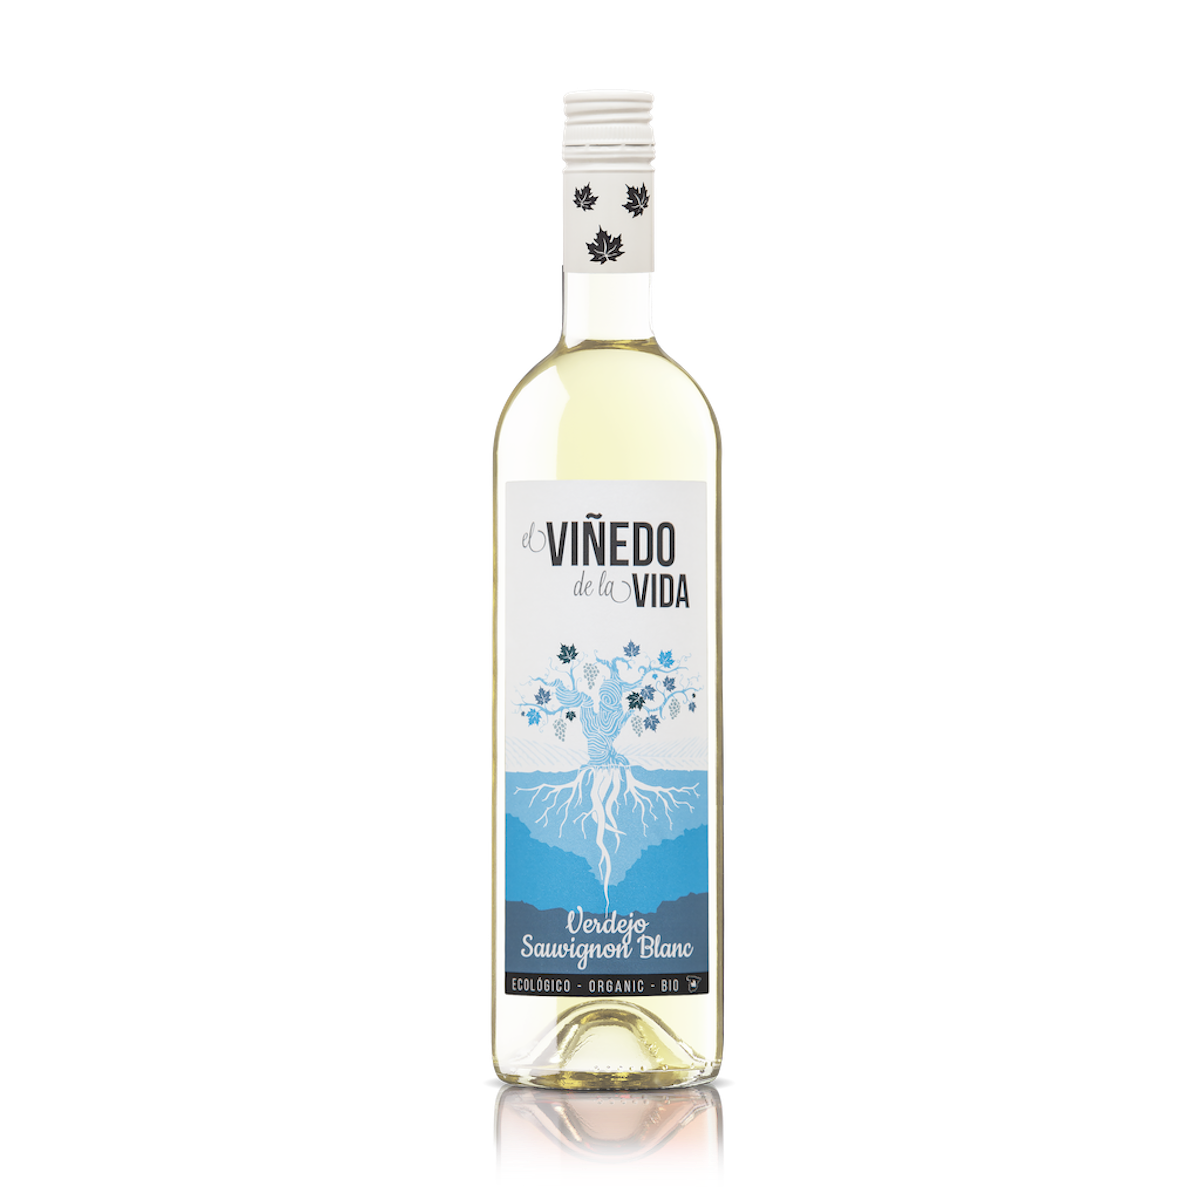 Vinedo de la Vida, Verdejo/Sauvignon Blanc, 2020